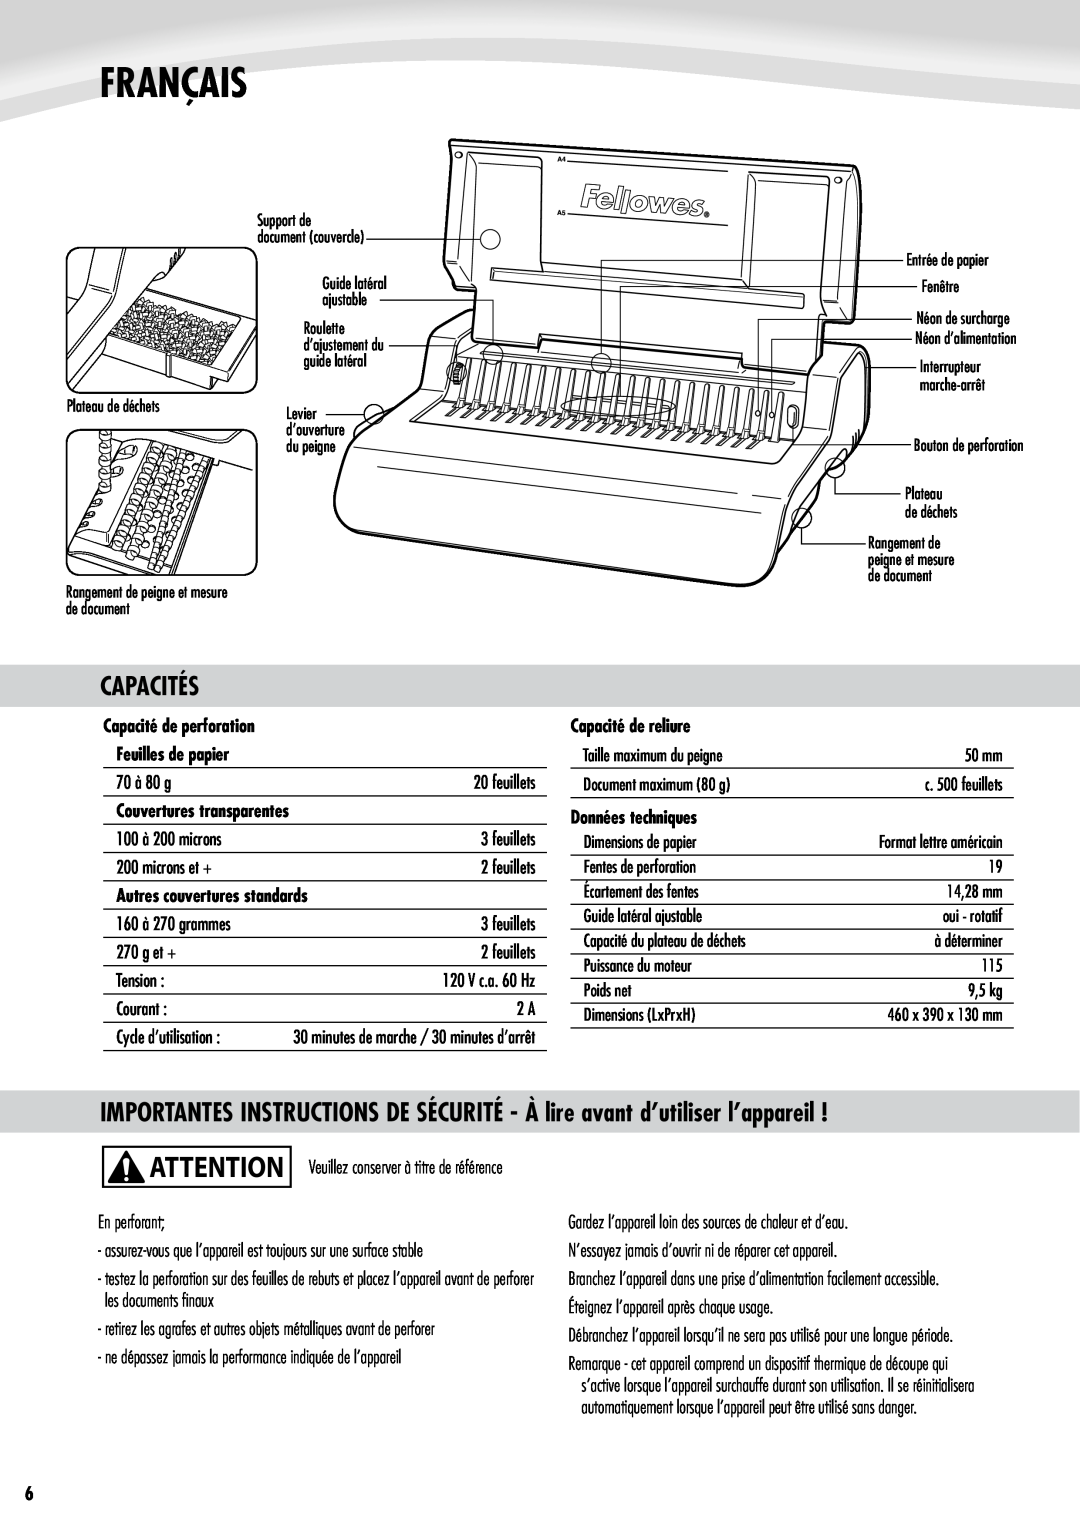 Fellowes e500 manual Français, Capacités, Capacité de perforation Feuilles de papier, Autres couvertures standards 